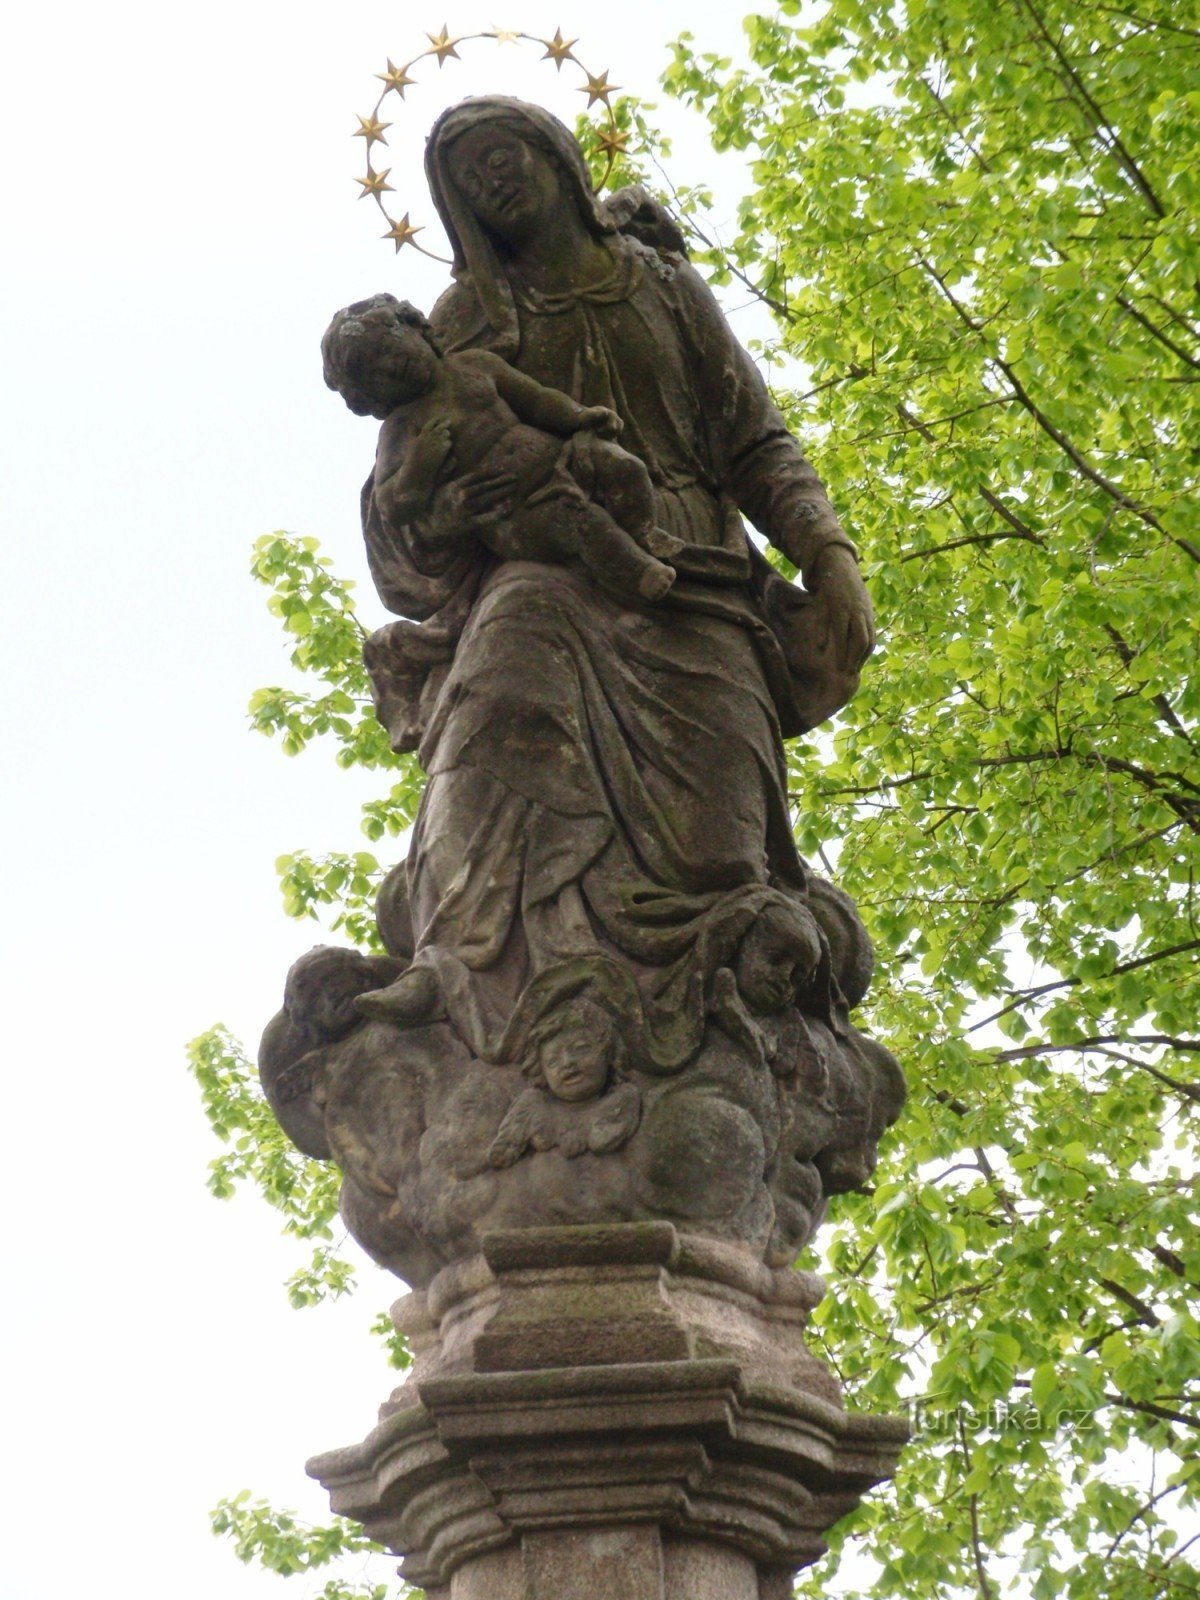 Žďár nad Sázavou - une colonne avec une statue de la Vierge Marie